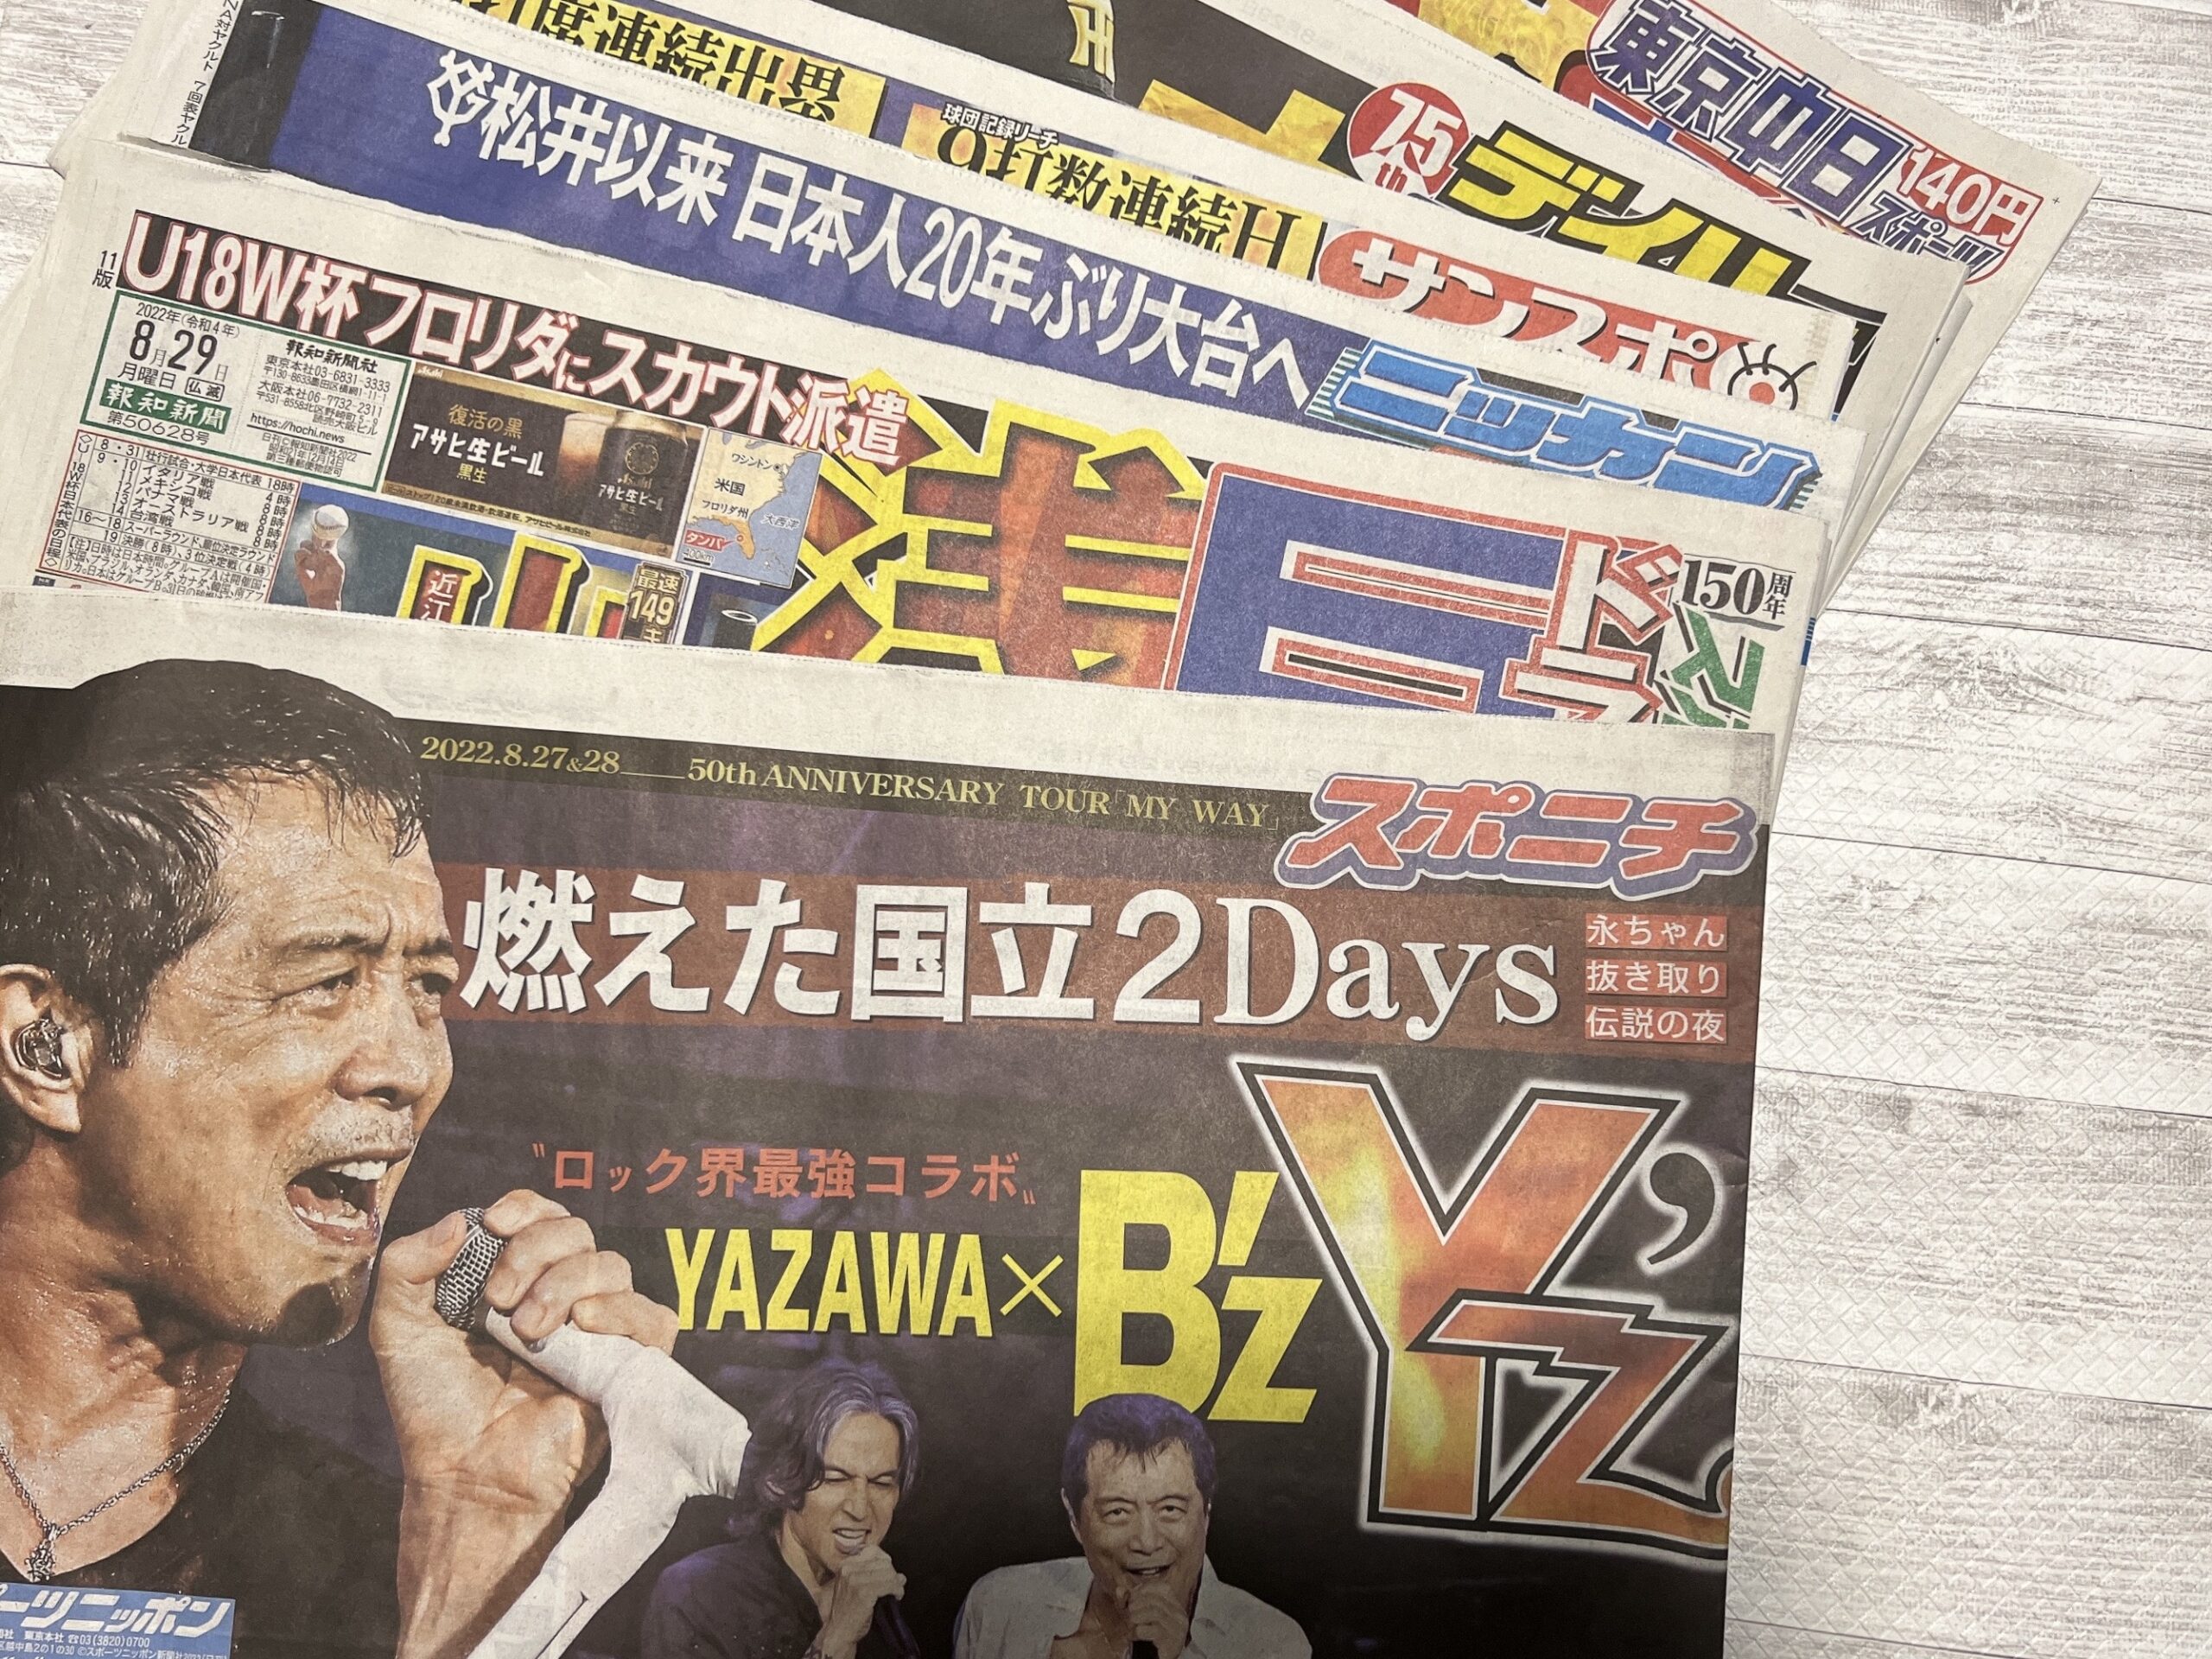 矢沢永吉とB'zのコラボを伝える各スポーツ紙一面を集めた写真